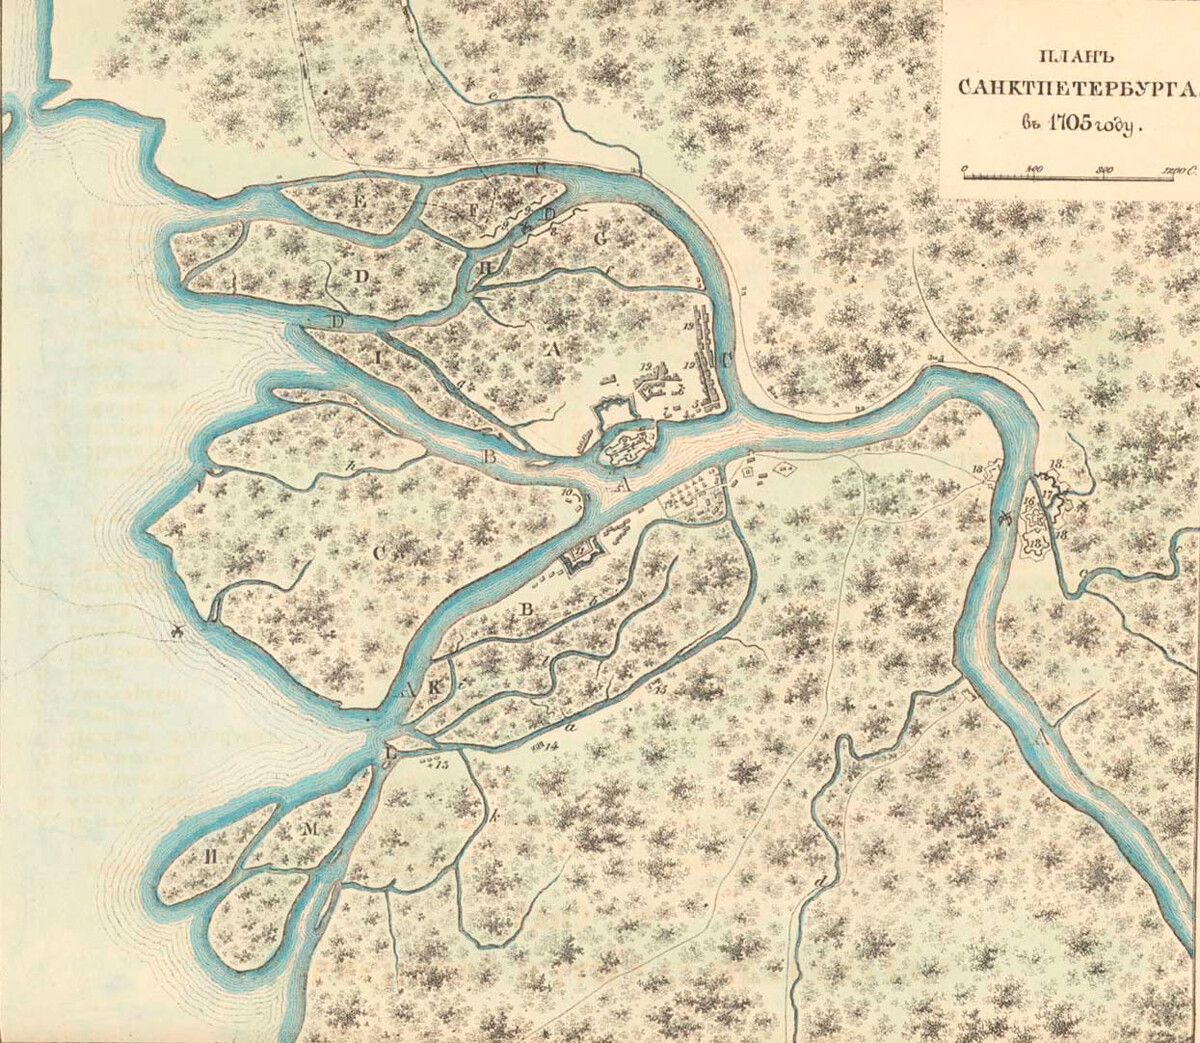 Plan de Saint-Pétersbourg en 1705, reconstruction historique des années 1850